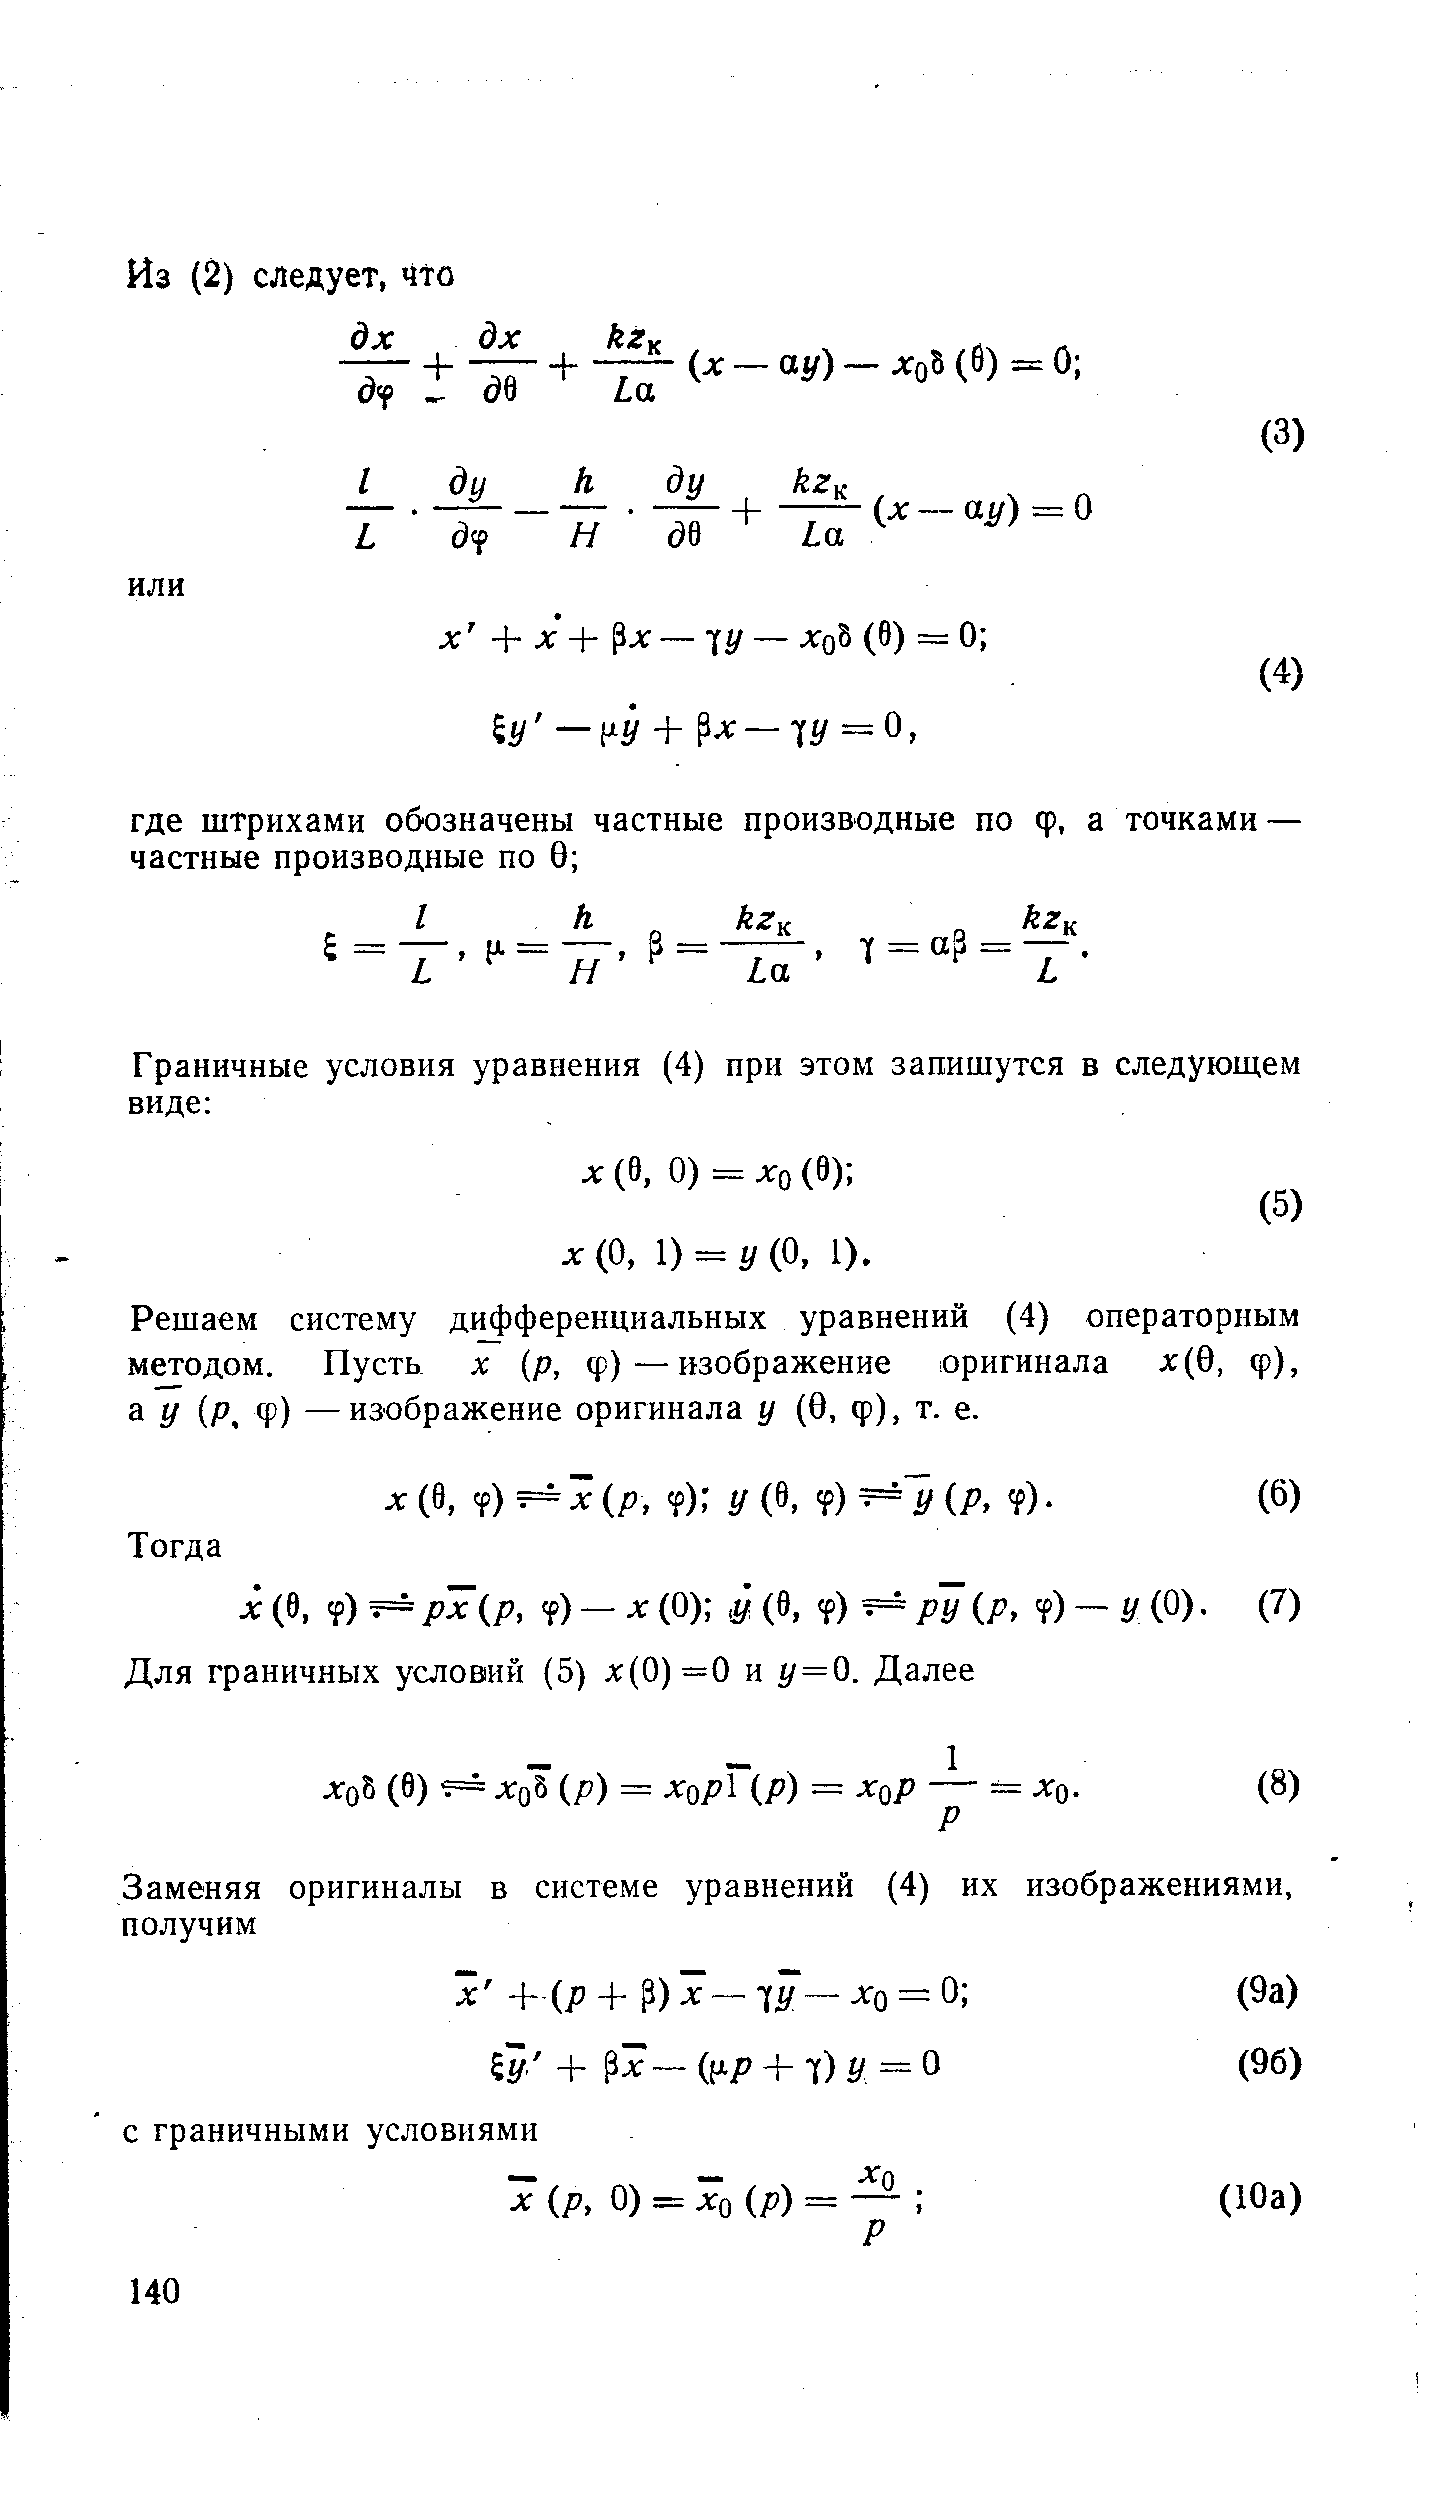 Решаем систему д1 ференциальных уравнений (4) операторным методом. Пусть х (р, ф)—изображение оригинала х(0, ф), а У Р, ф) —изображение оригинала у (0, ф), т. е.